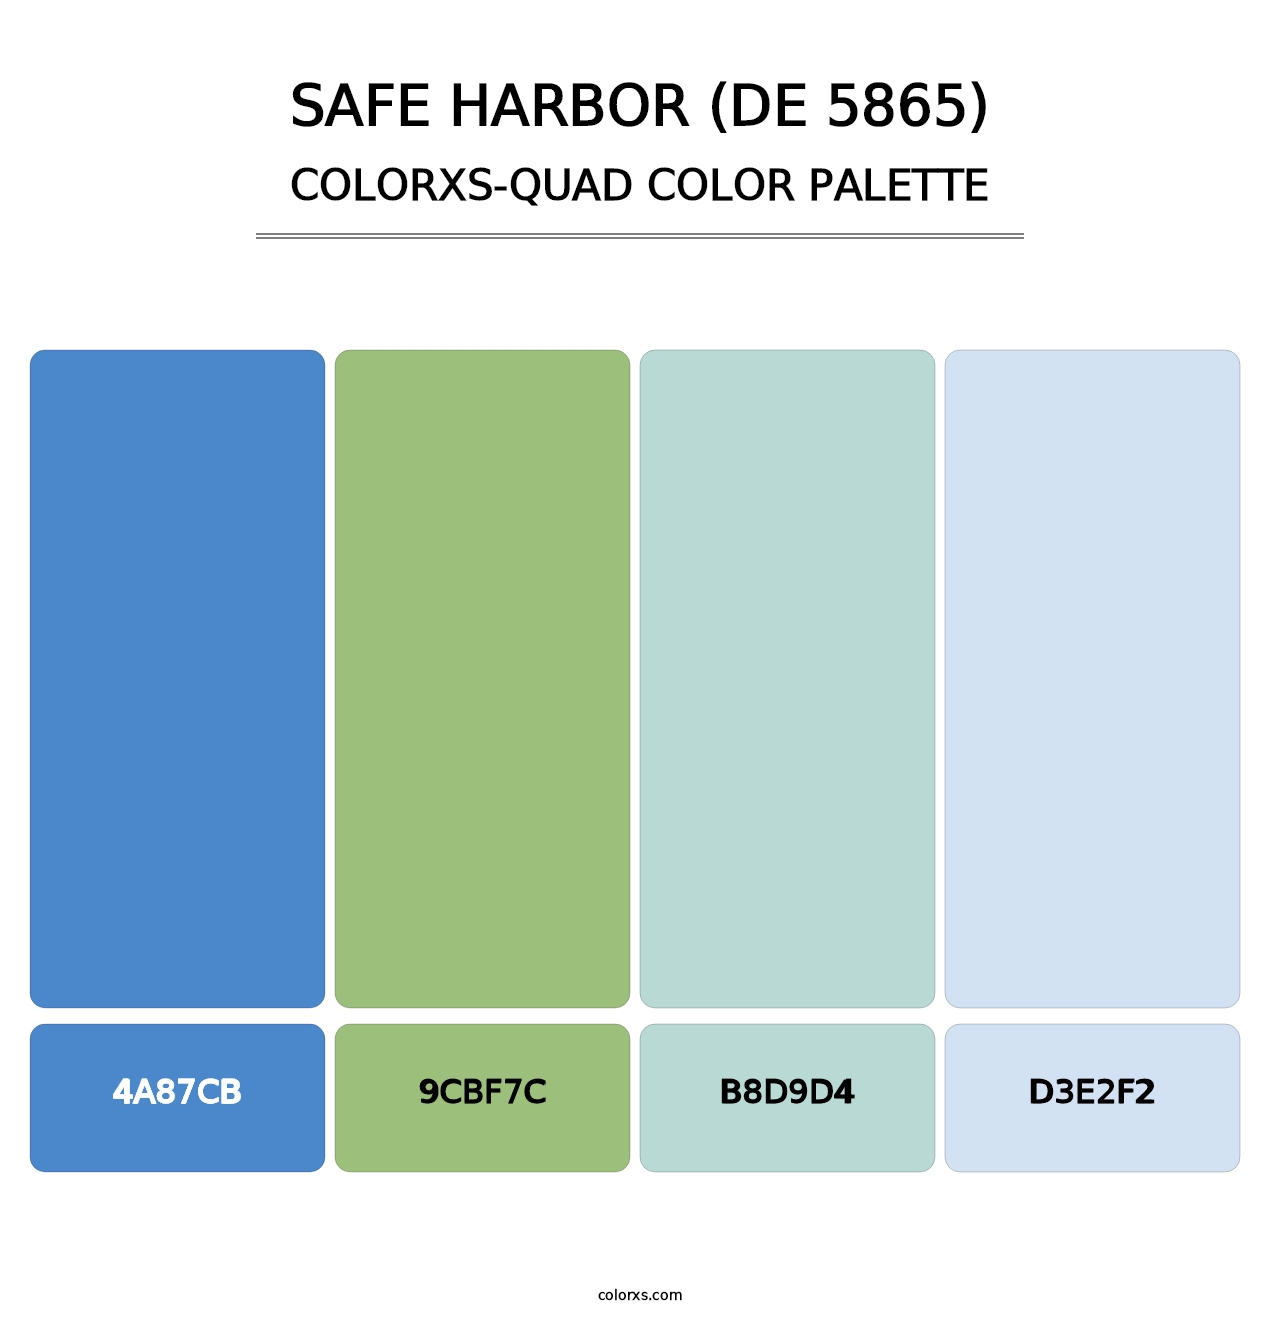 Safe Harbor (DE 5865) - Colorxs Quad Palette